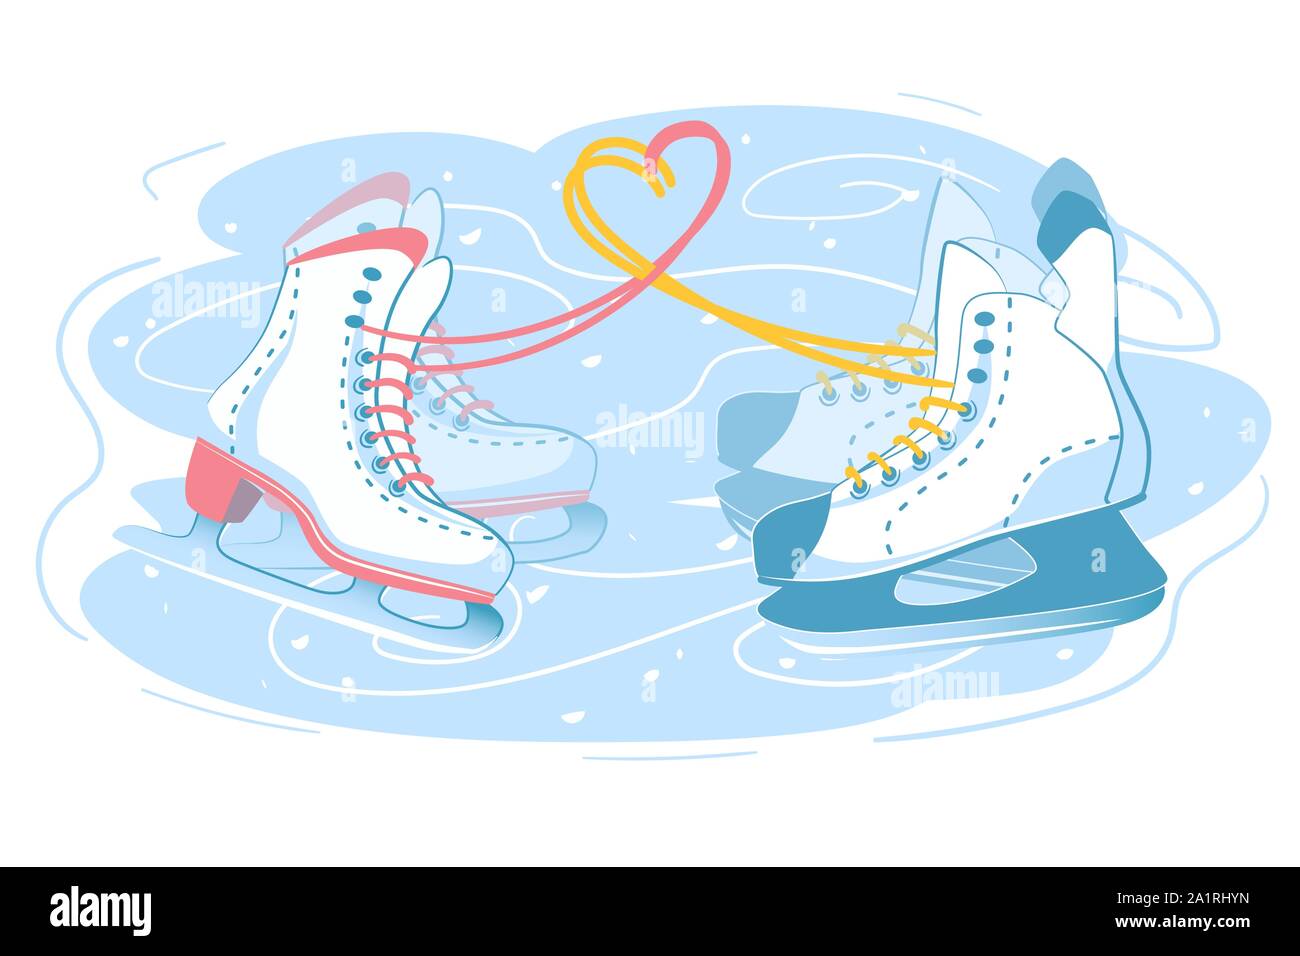 Männliche und weibliche Skates zusammen, Paar auf der Eisbahn. Zwei verschiedene Schlittschuh Stiefel mit Liebe Herz Zeichen aus Schnürsenkel. Romantischen Winterurlaub Postkarte Abbildung. Isoliert weißer Hintergrund Stock Vektor